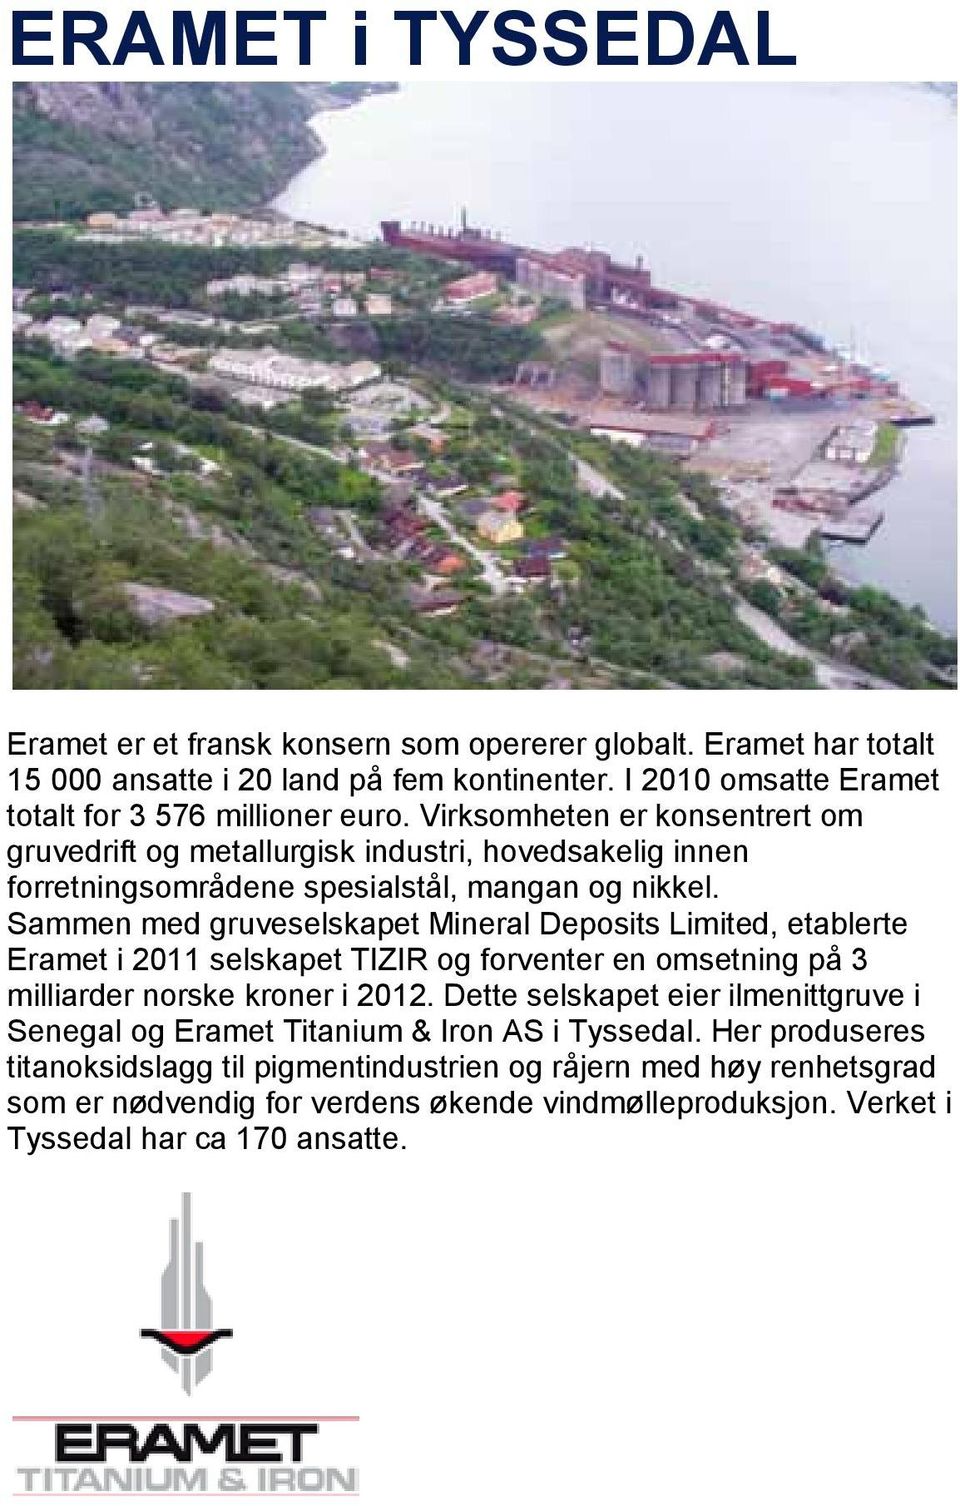 Sammen med gruveselskapet Mineral Deposits Limited, etablerte Eramet i 2011 selskapet TIZIR og forventer en omsetning på 3 milliarder norske kroner i 2012.